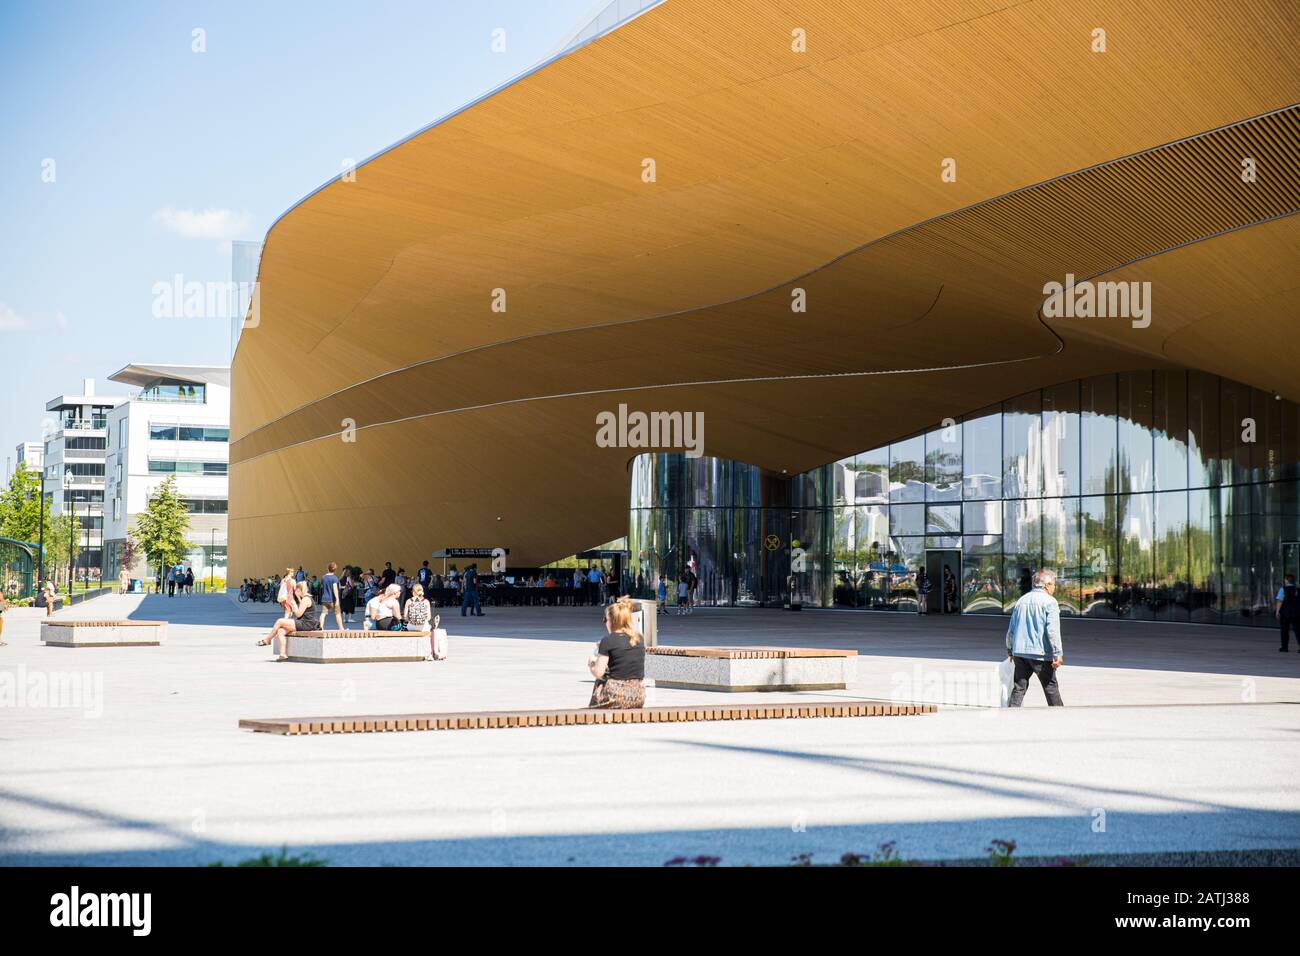 Nuova biblioteca centrale di Helsinki, esterni Oodi. Architettura settentrionale moderna. Ingresso dell'edificio sulla piazza della città, soleggiata giornata estiva. Foto Stock